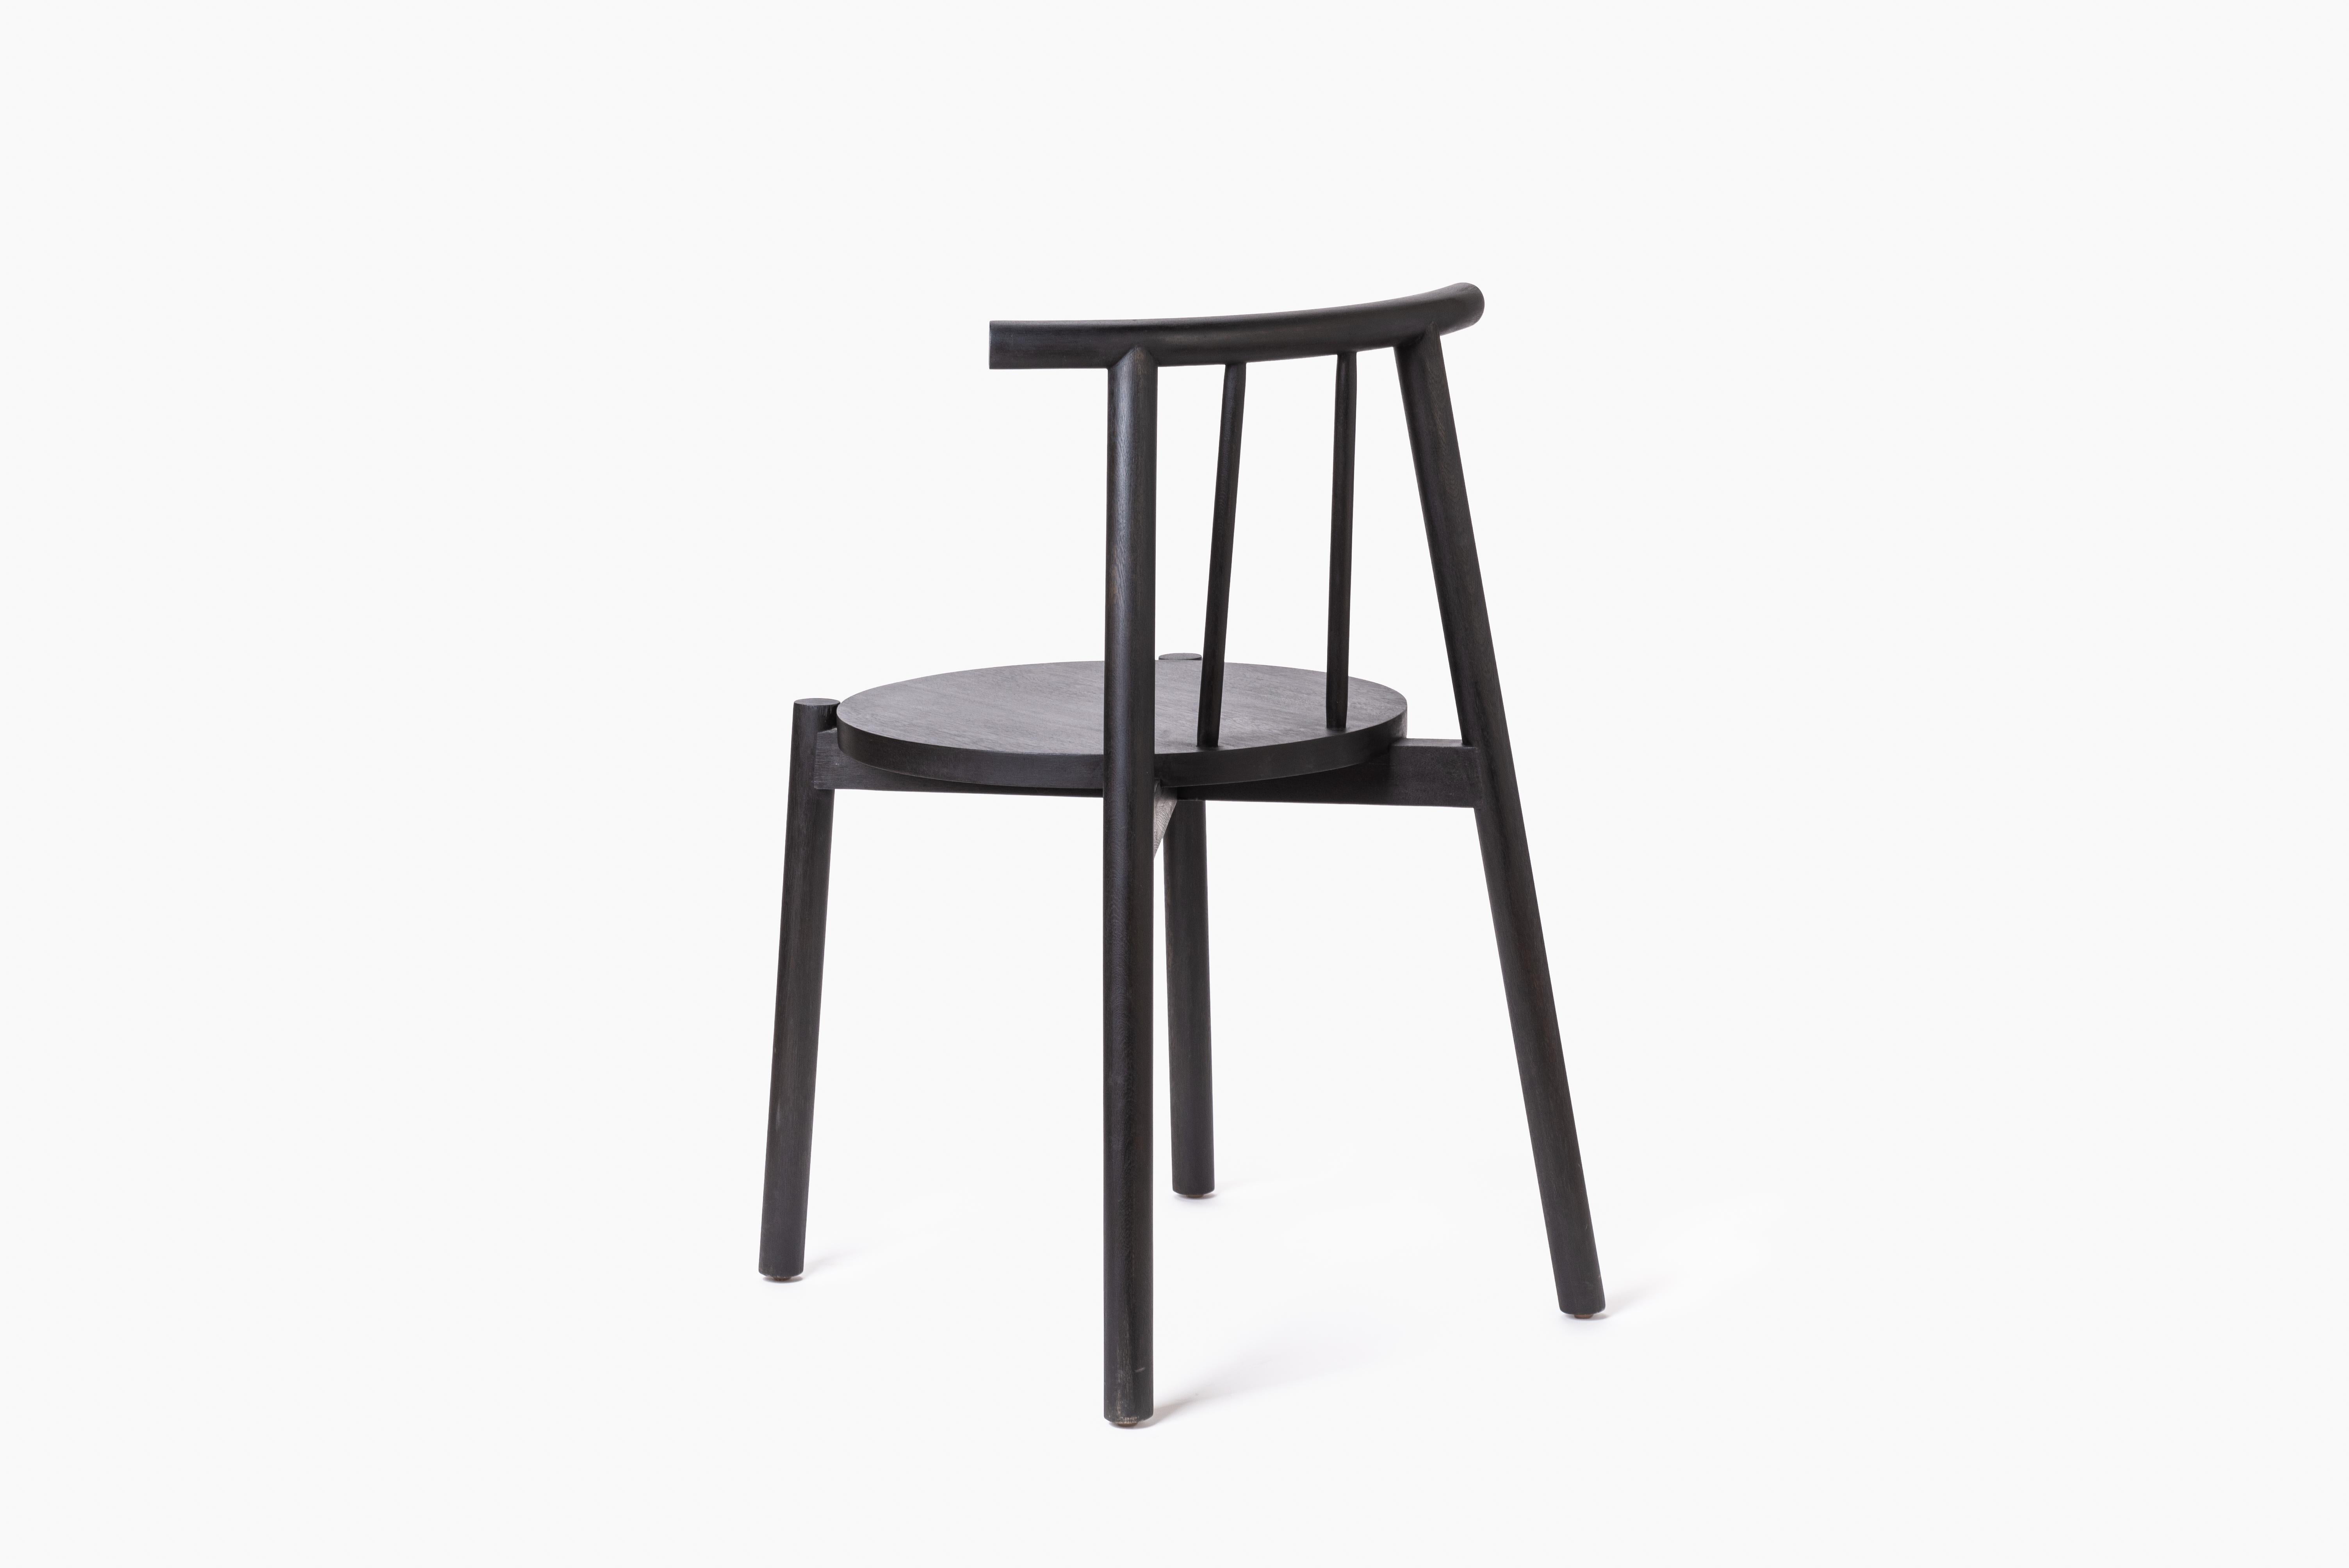 Ein Stuhl für alle Gelegenheiten, von gewöhnlich bis außergewöhnlich. Dieses Möbelstück ist eine Synthese aus Struktur und Form, die sich durch ihre konstruktive Klarheit und stille Schönheit auszeichnet. Dieser Stuhl wird von feinen Schreinern im